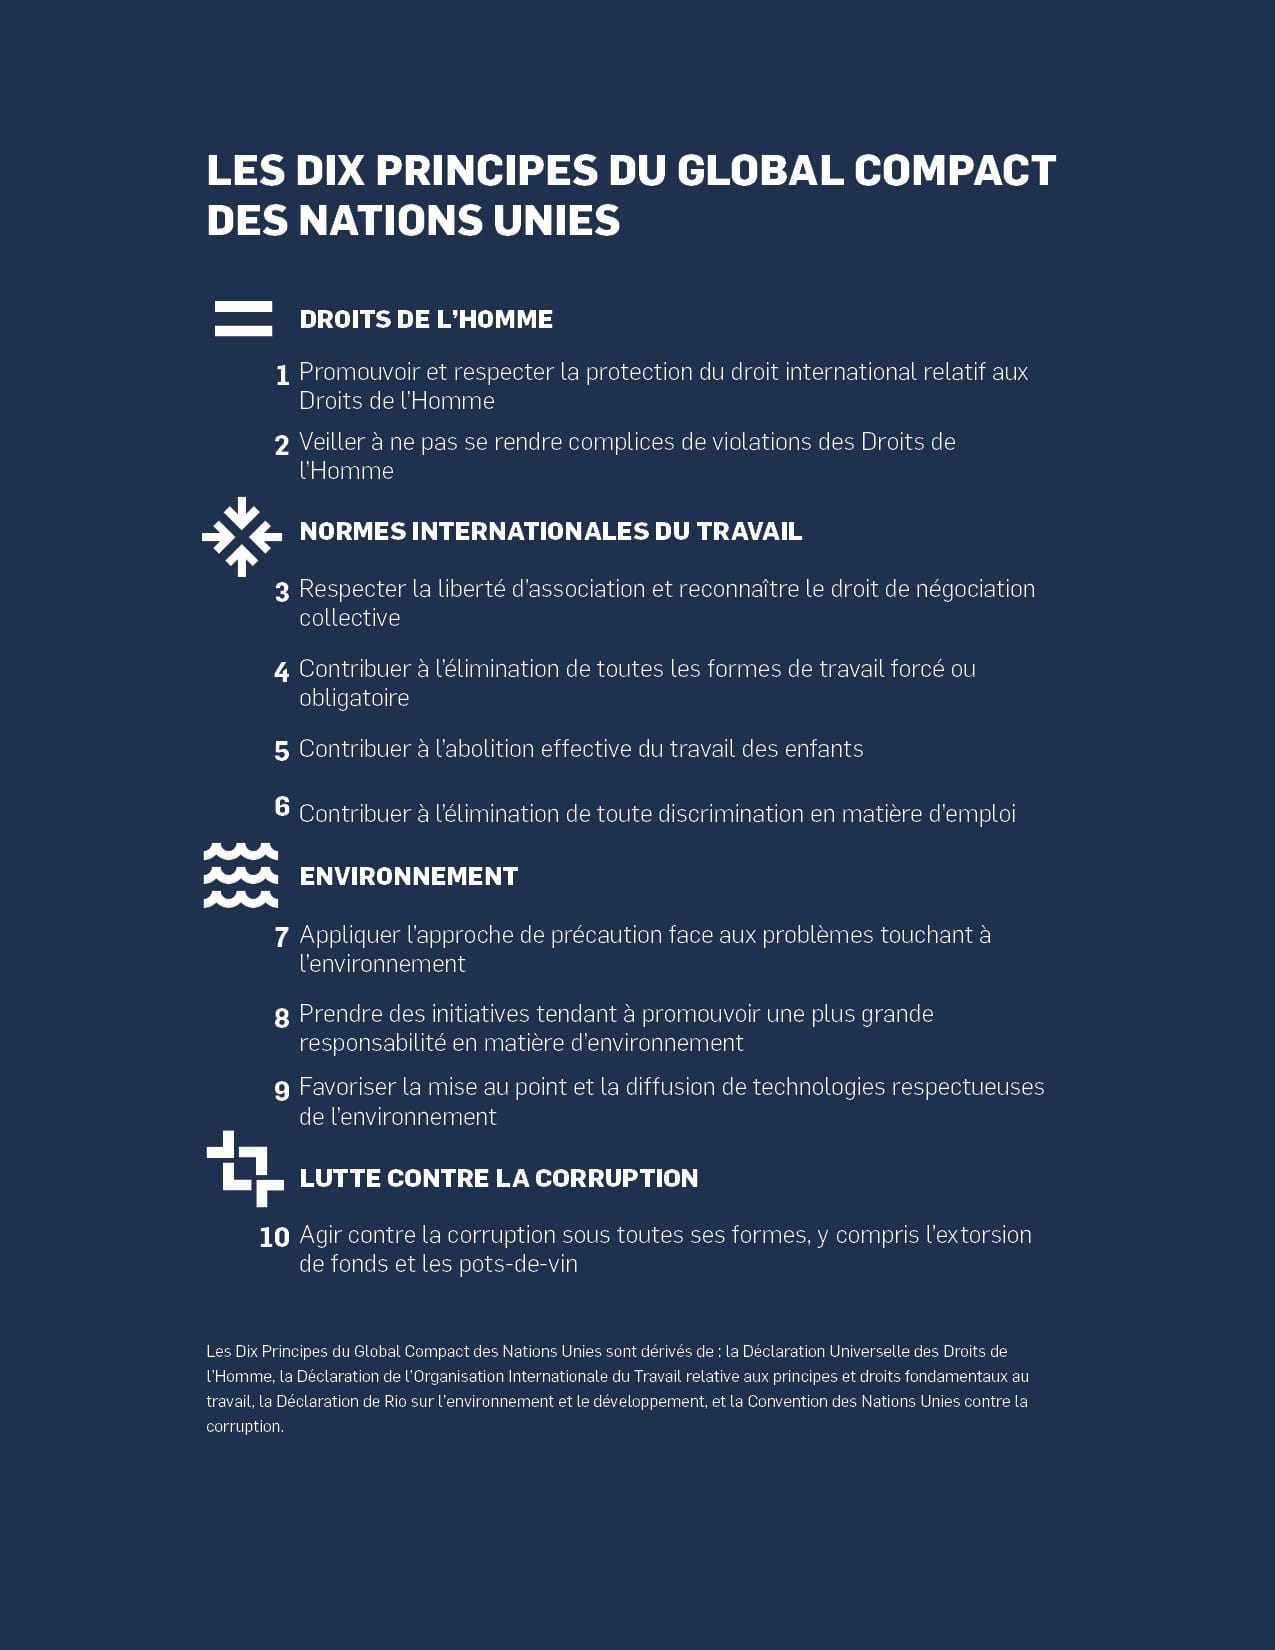 Les 10 principes du global compact des nations unies